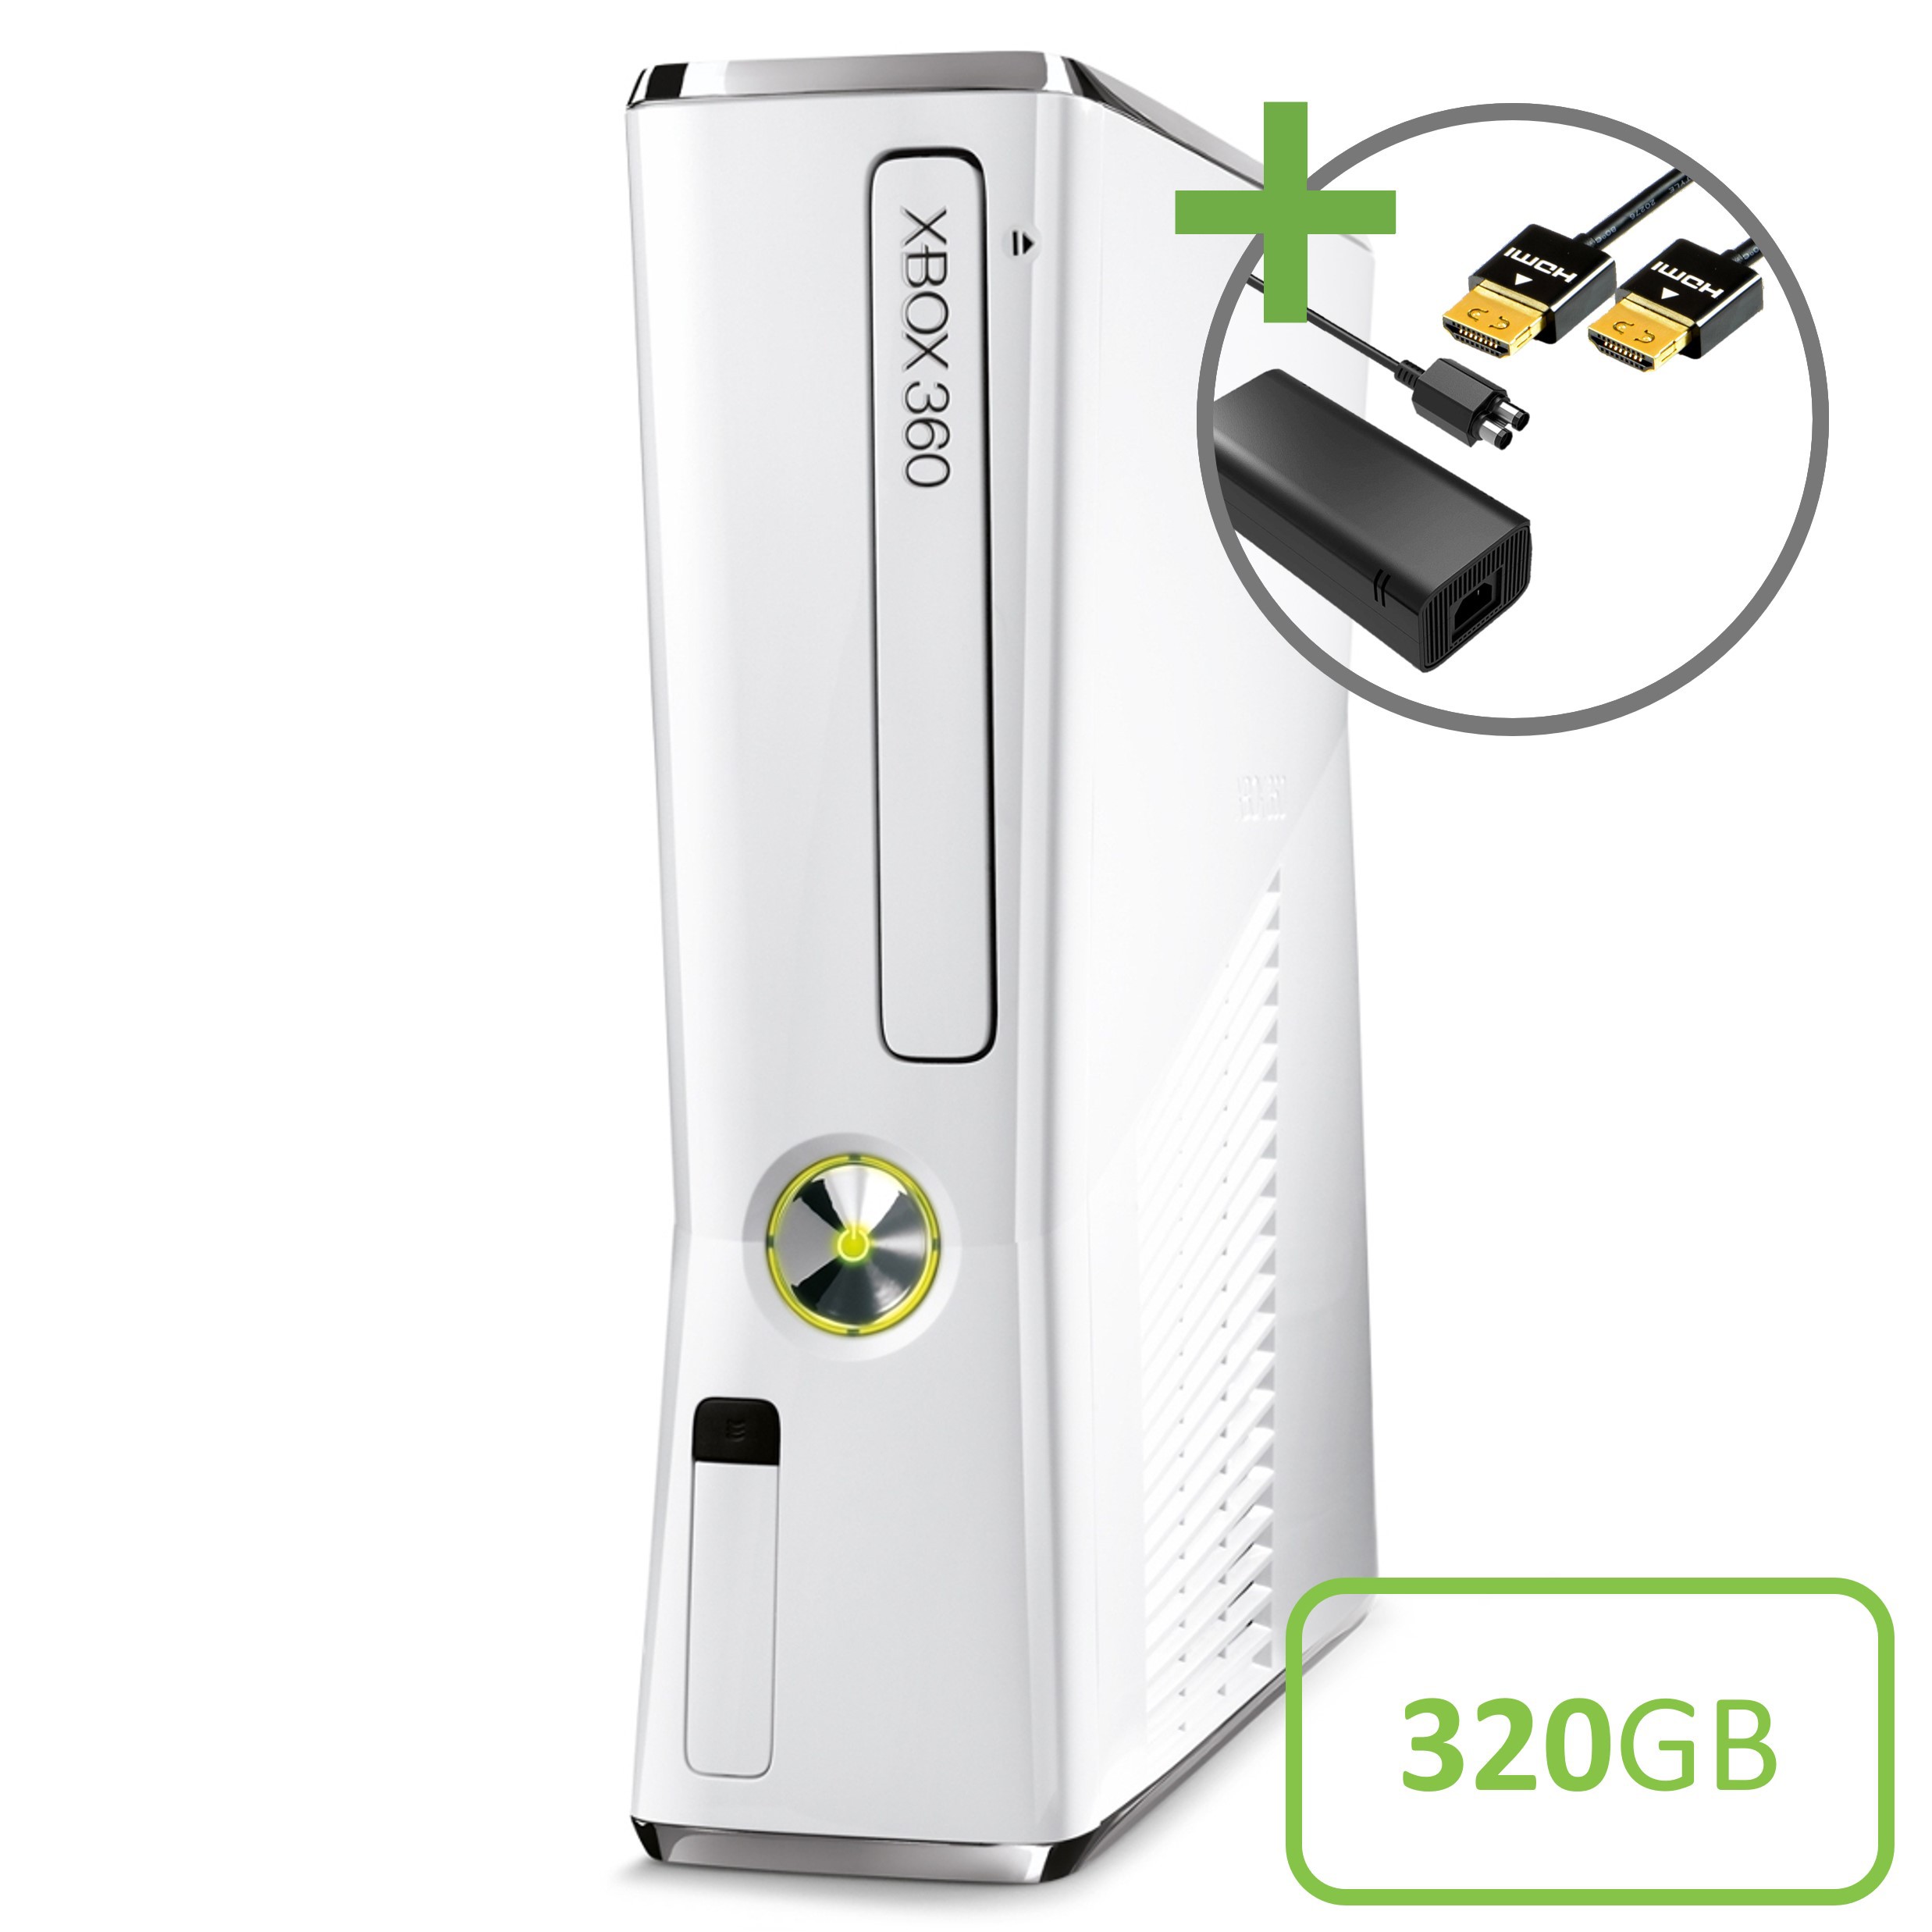 Microsoft Xbox 360 Slim Console White (320GB) - Xbox 360 Hardware